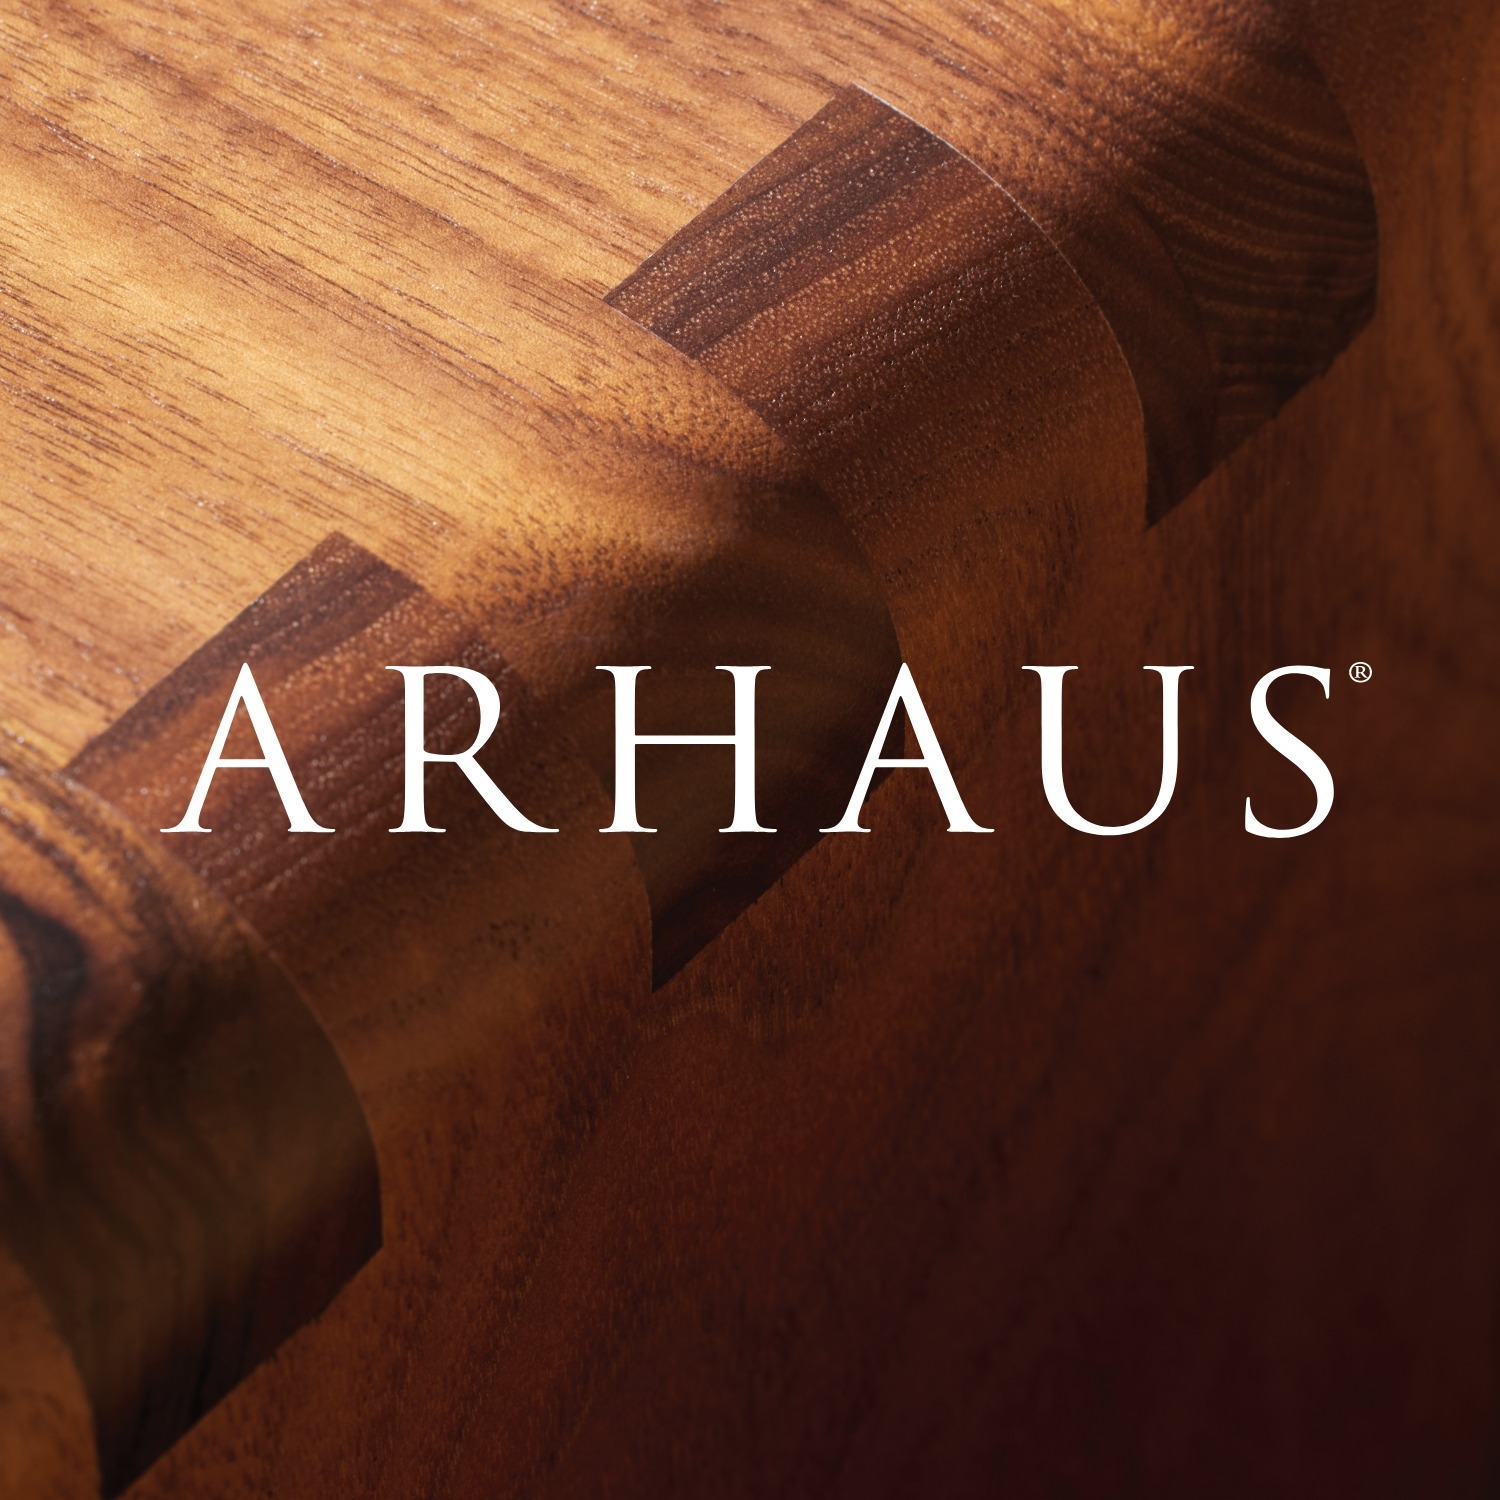 Arhaus LLC